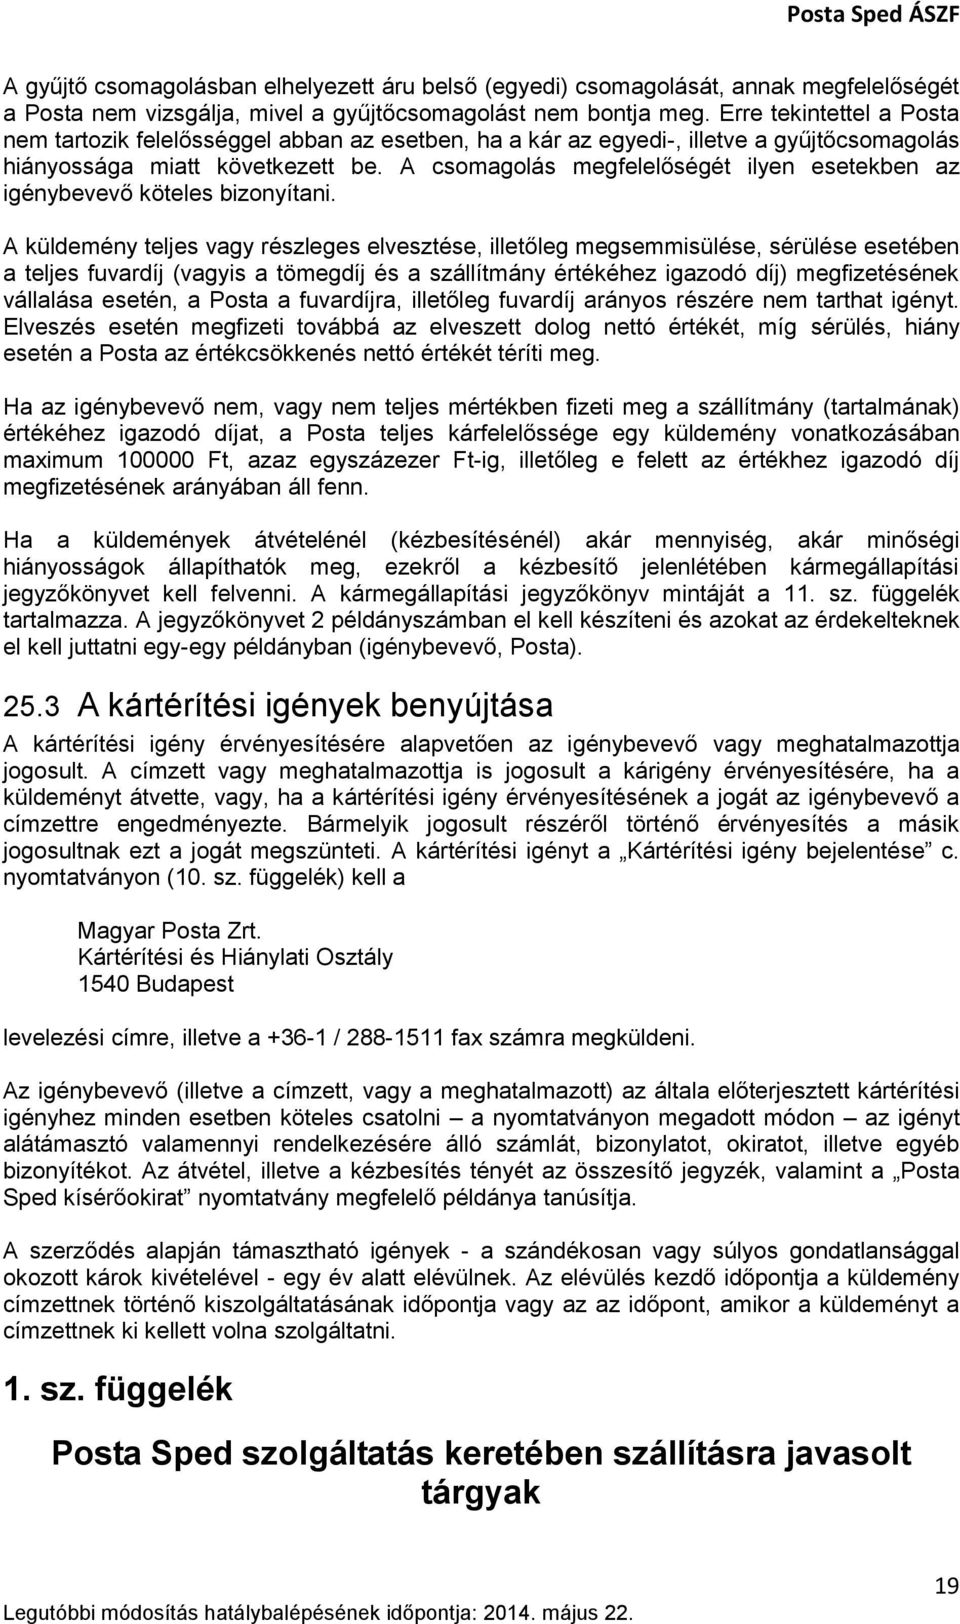 A Posta Sped szolgáltatás Általános Szerződési Feltételei - PDF Ingyenes  letöltés